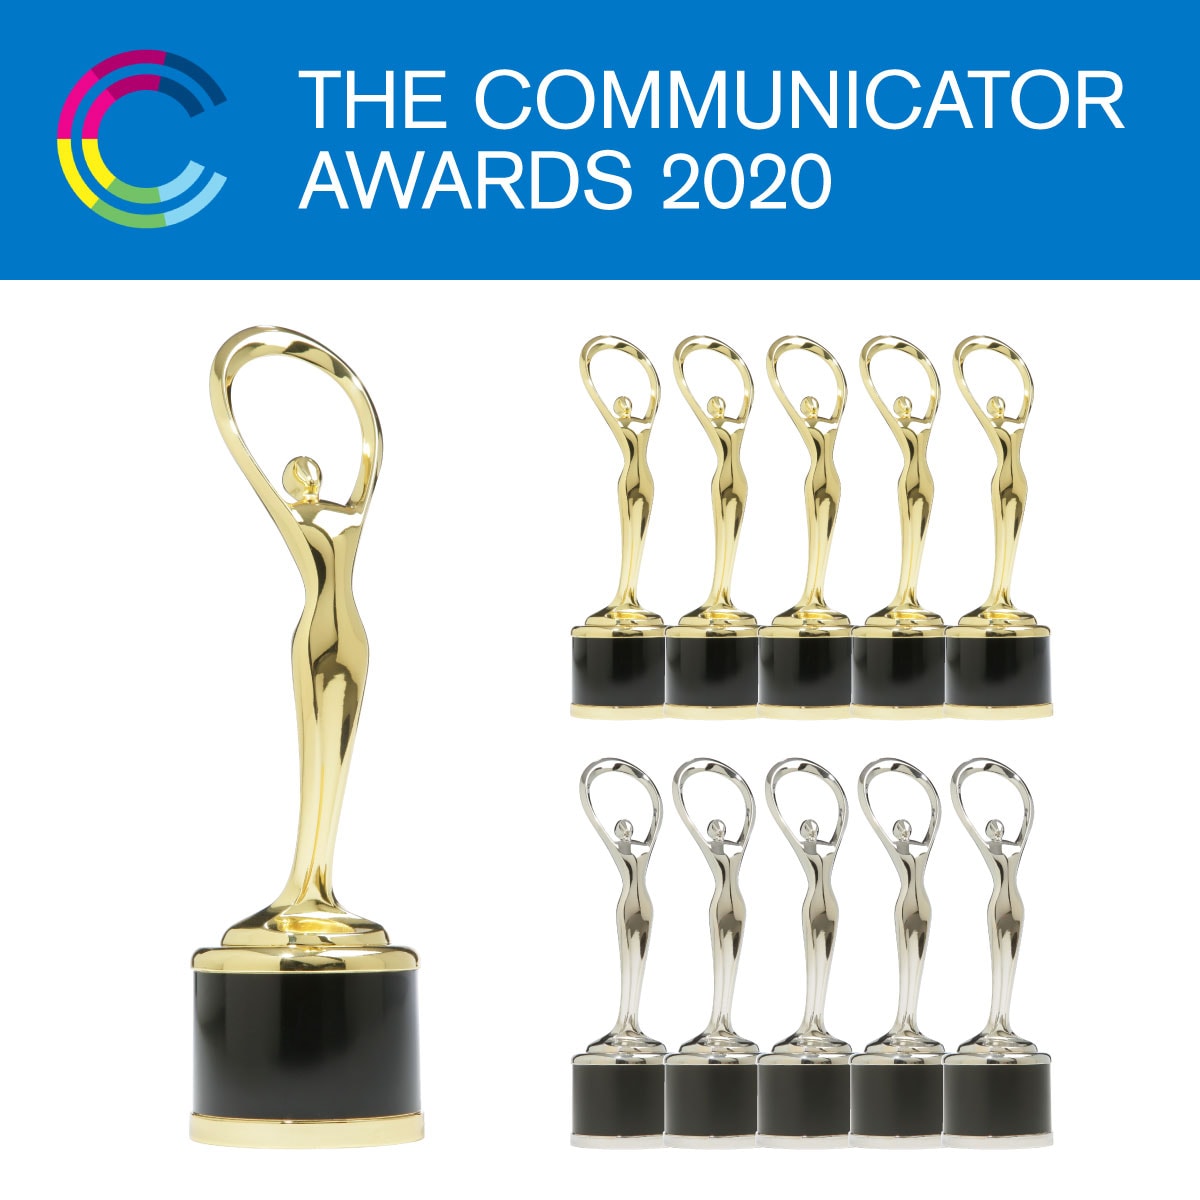 The Communicator Awards 2020